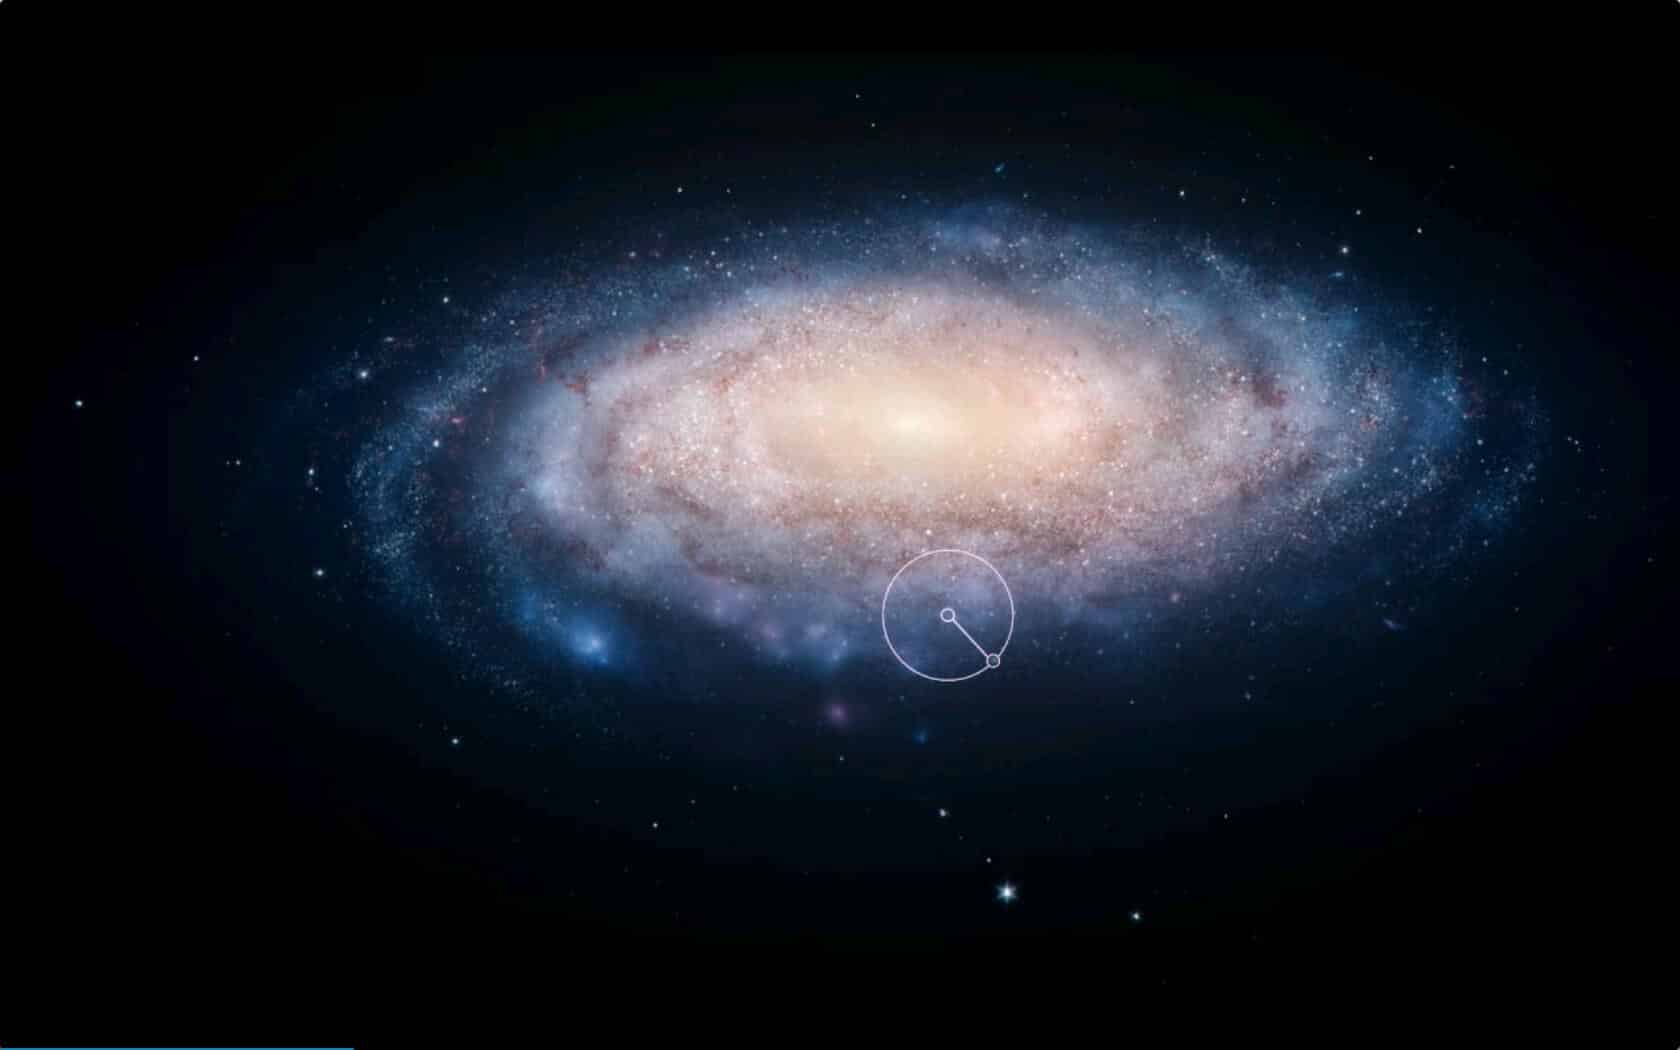 يصور القسم المحاط بدائرة الجزء من الكون الذي يجب أن نراه لو كان عمره 6,500 عام فقط، وهي المسافة بين النظام الشمسي وسديم السرطان. لقطة من مسلسل كوزموس التابع لشبكتي فوكس وناشيونال جيوغرافيك